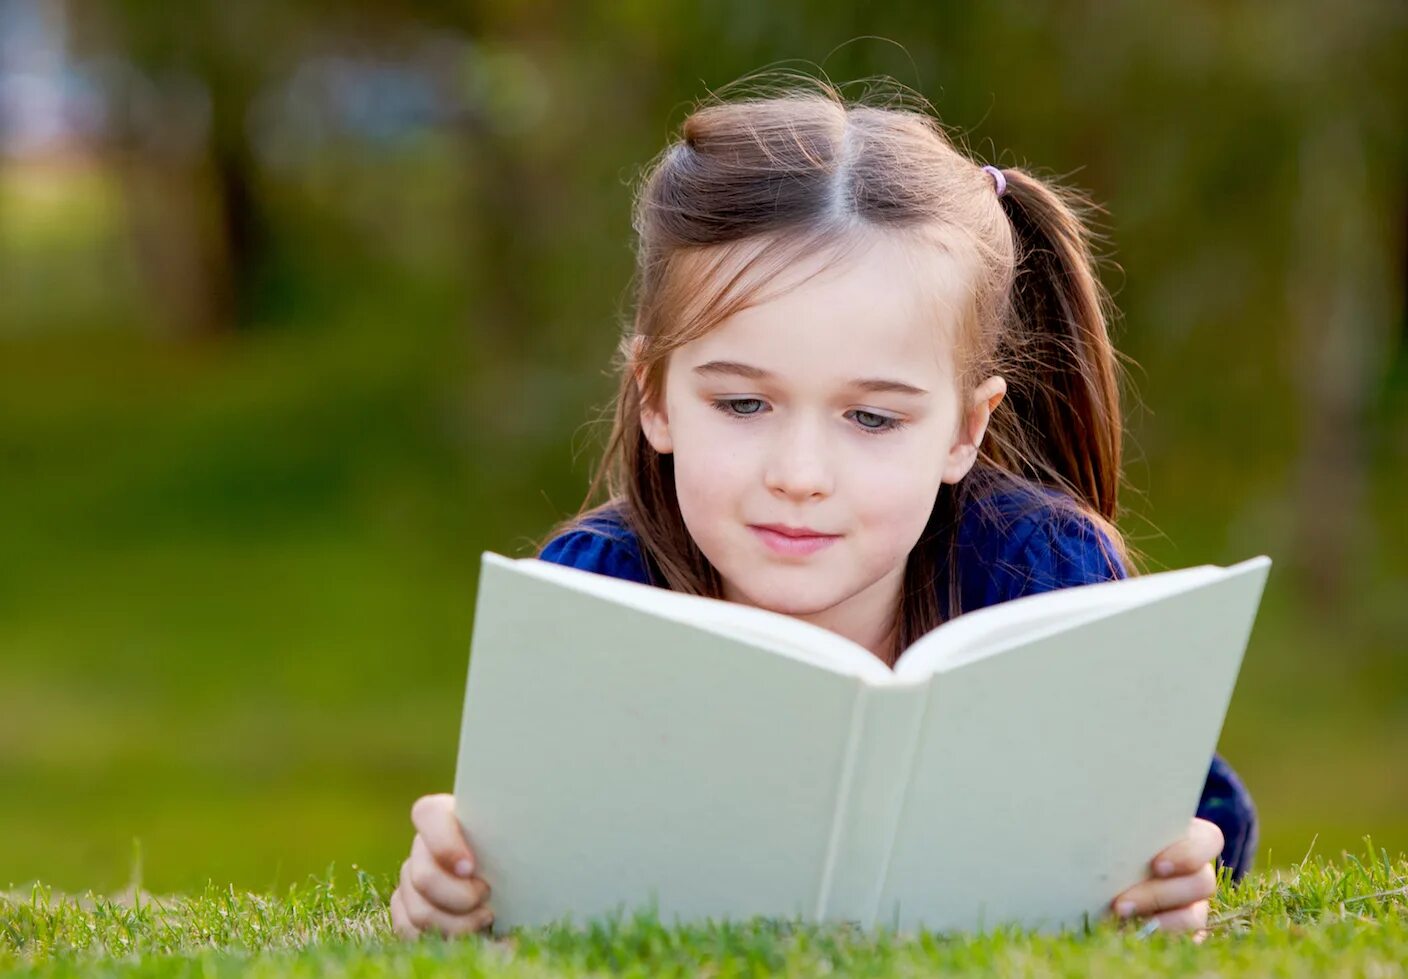 Чтение расширяет кругозор. Чтение book look u:. Kid reading book. Action reading.